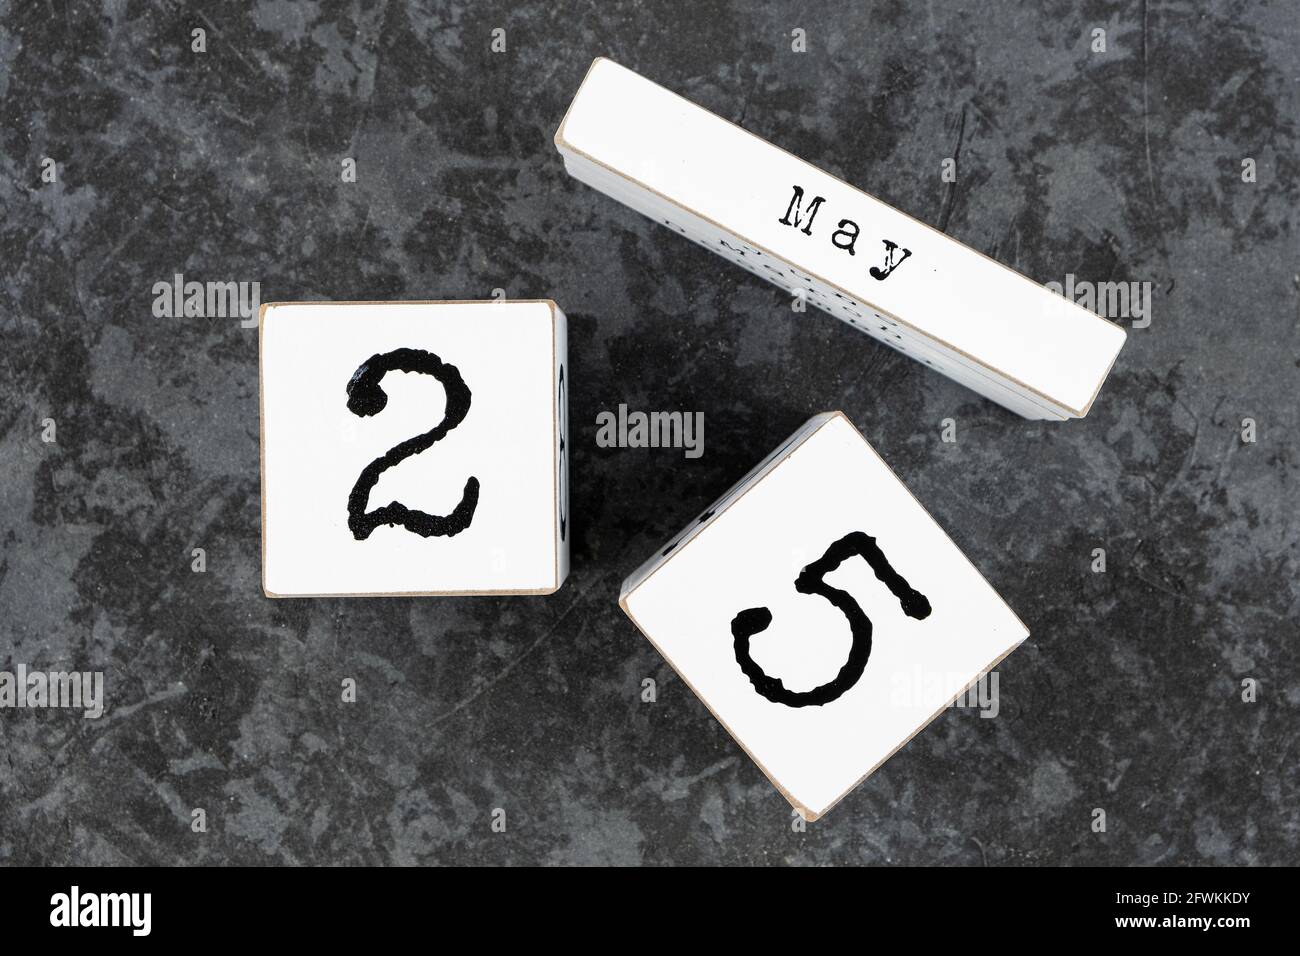 25 mai. Mai 25 calendrier cube en bois blanc sur fond de béton gris grunge Banque D'Images